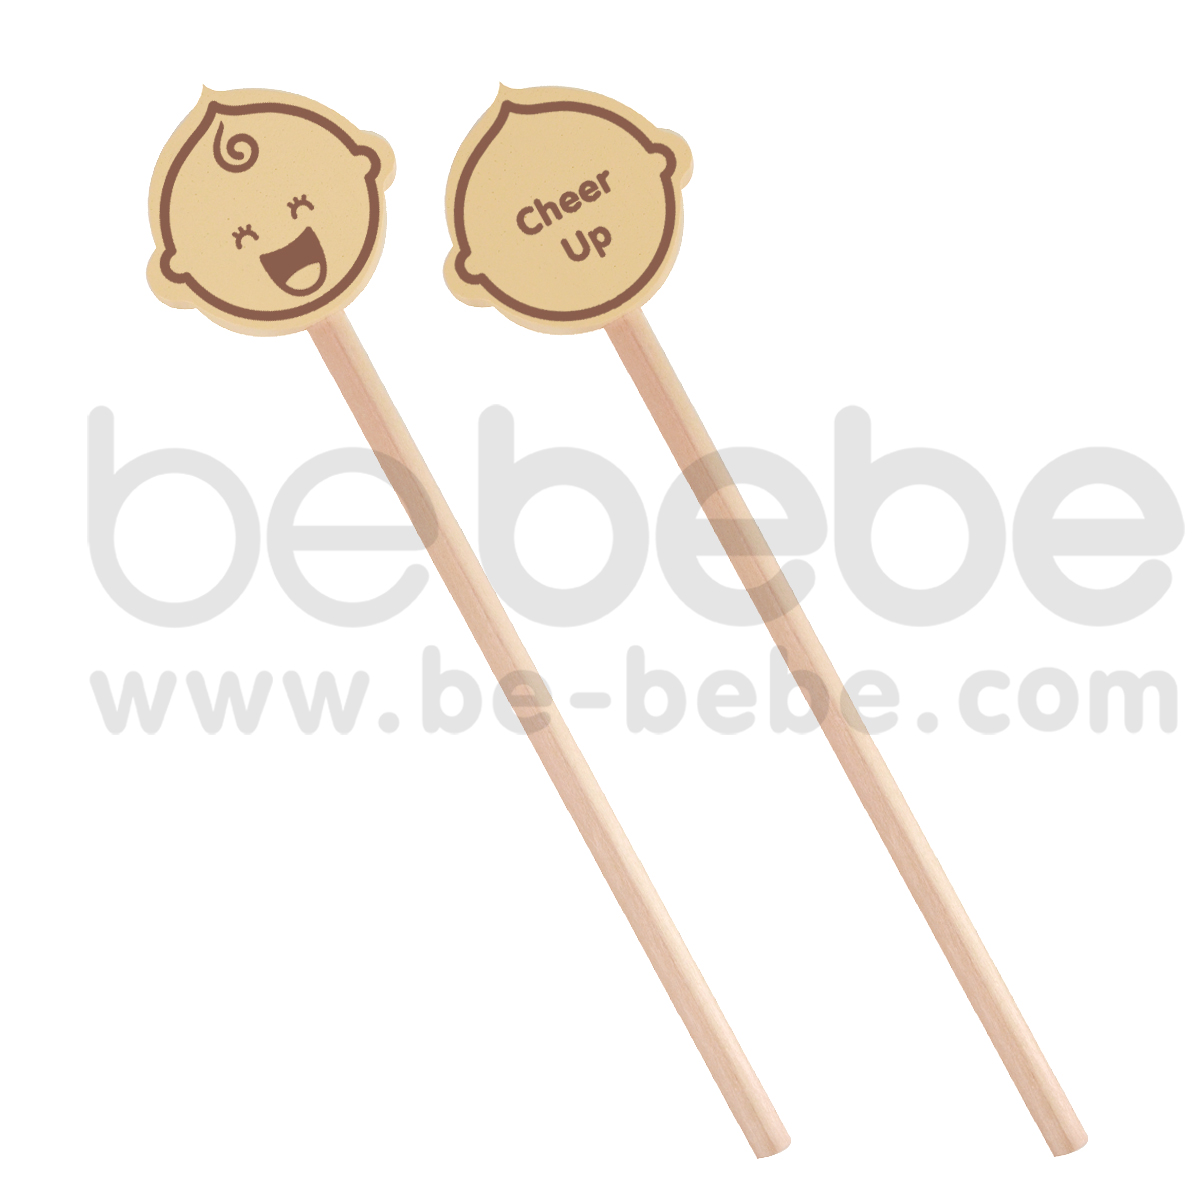 bebebe : Cream Pencil- Cheer Up